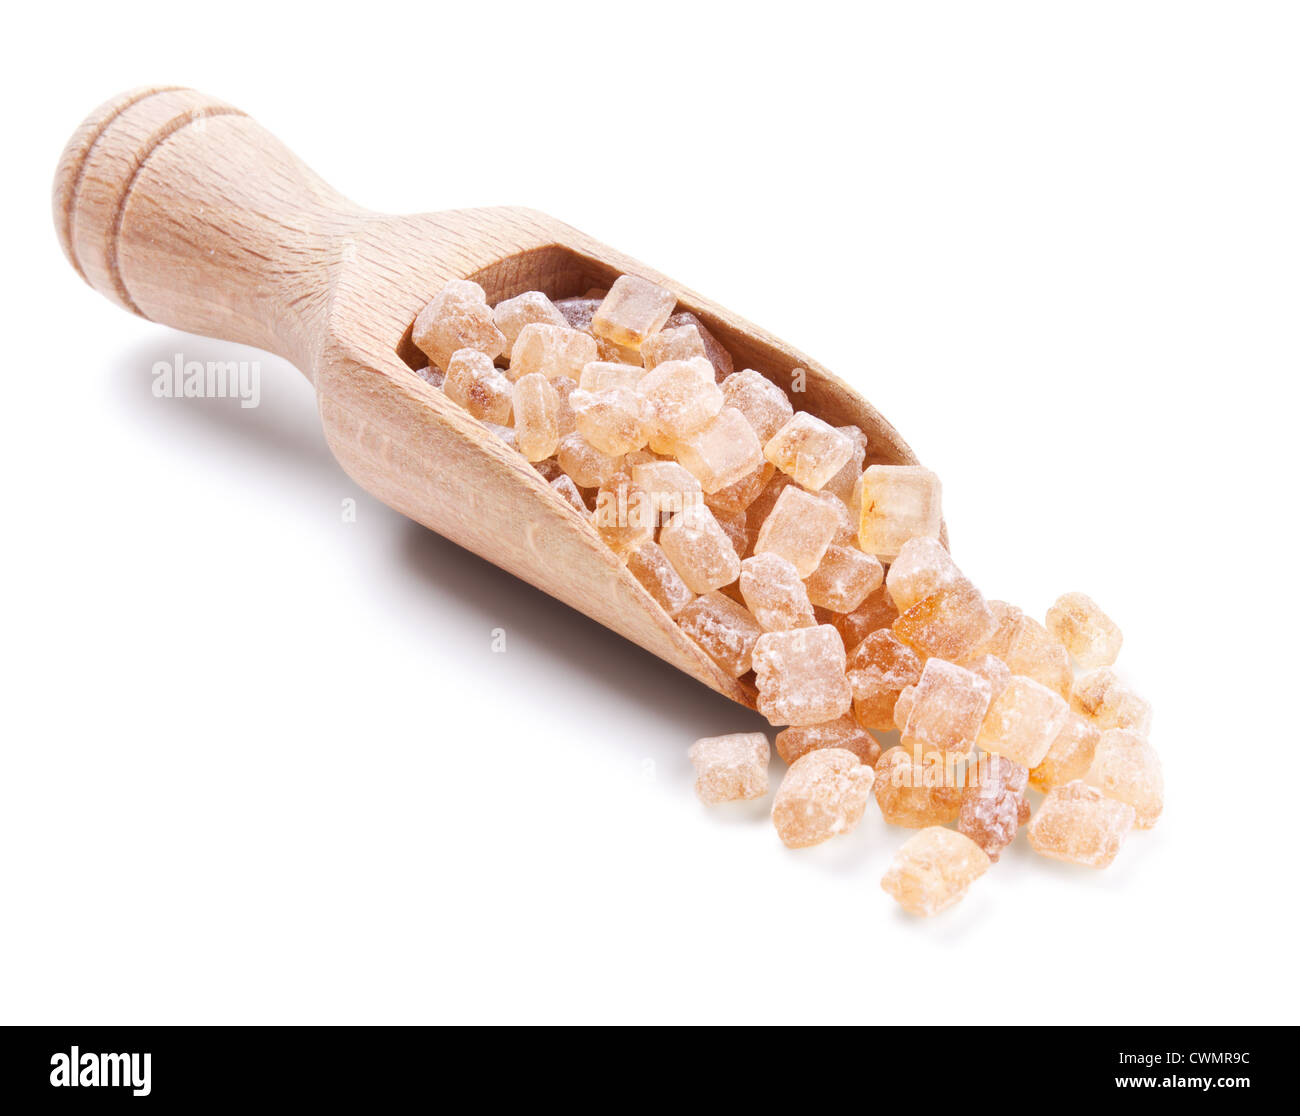 Cuchara de madera con cristales de azúcar caramelizado aislado en blanco Foto de stock